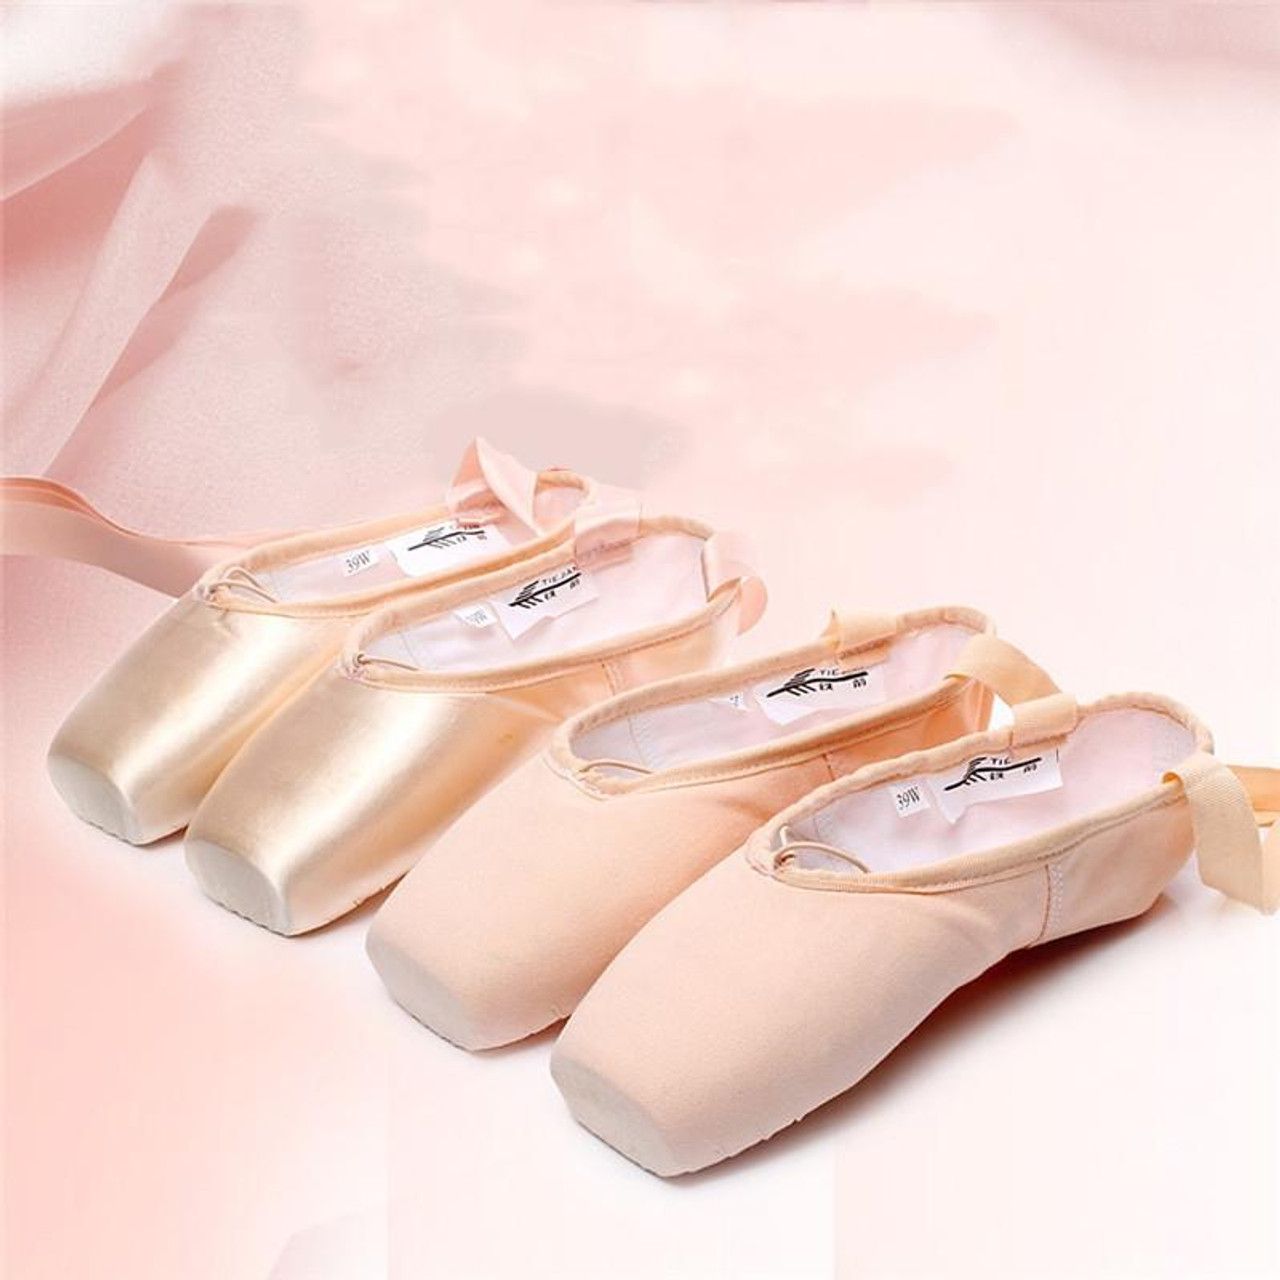 1 Pair Anti-Slip Yoga Socks Toeless Pilates Socks Ballet Yoga Pilates Barre  Shoes for Women, 245-250mm Foot Length(Pink)